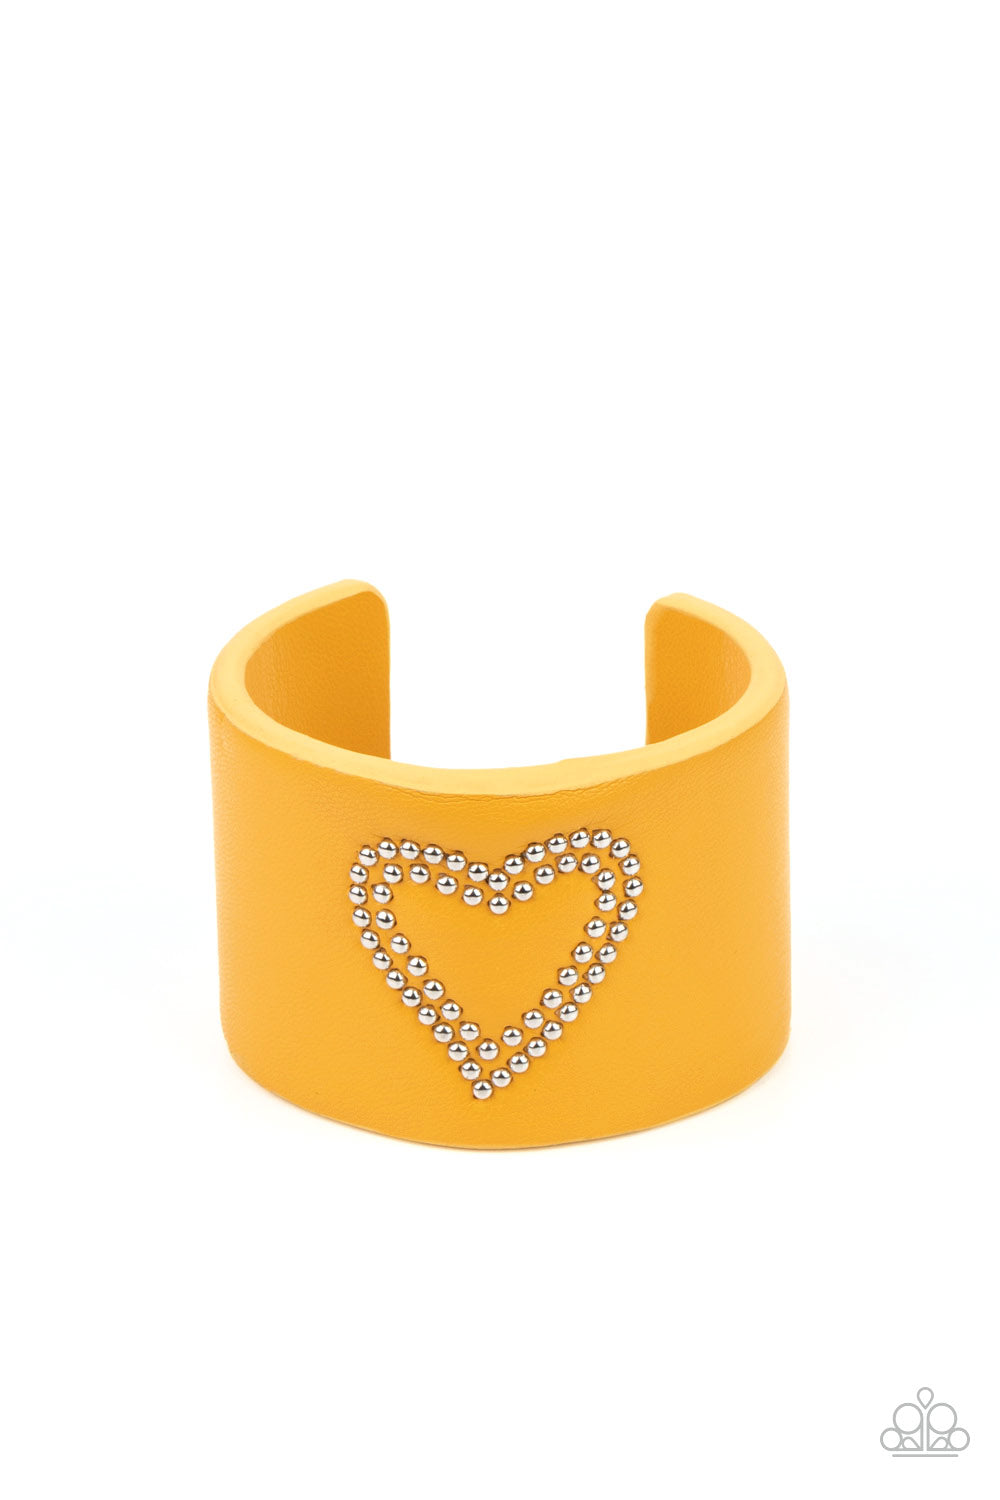 Rodeo Romance - Yellow cuff bracelet C018